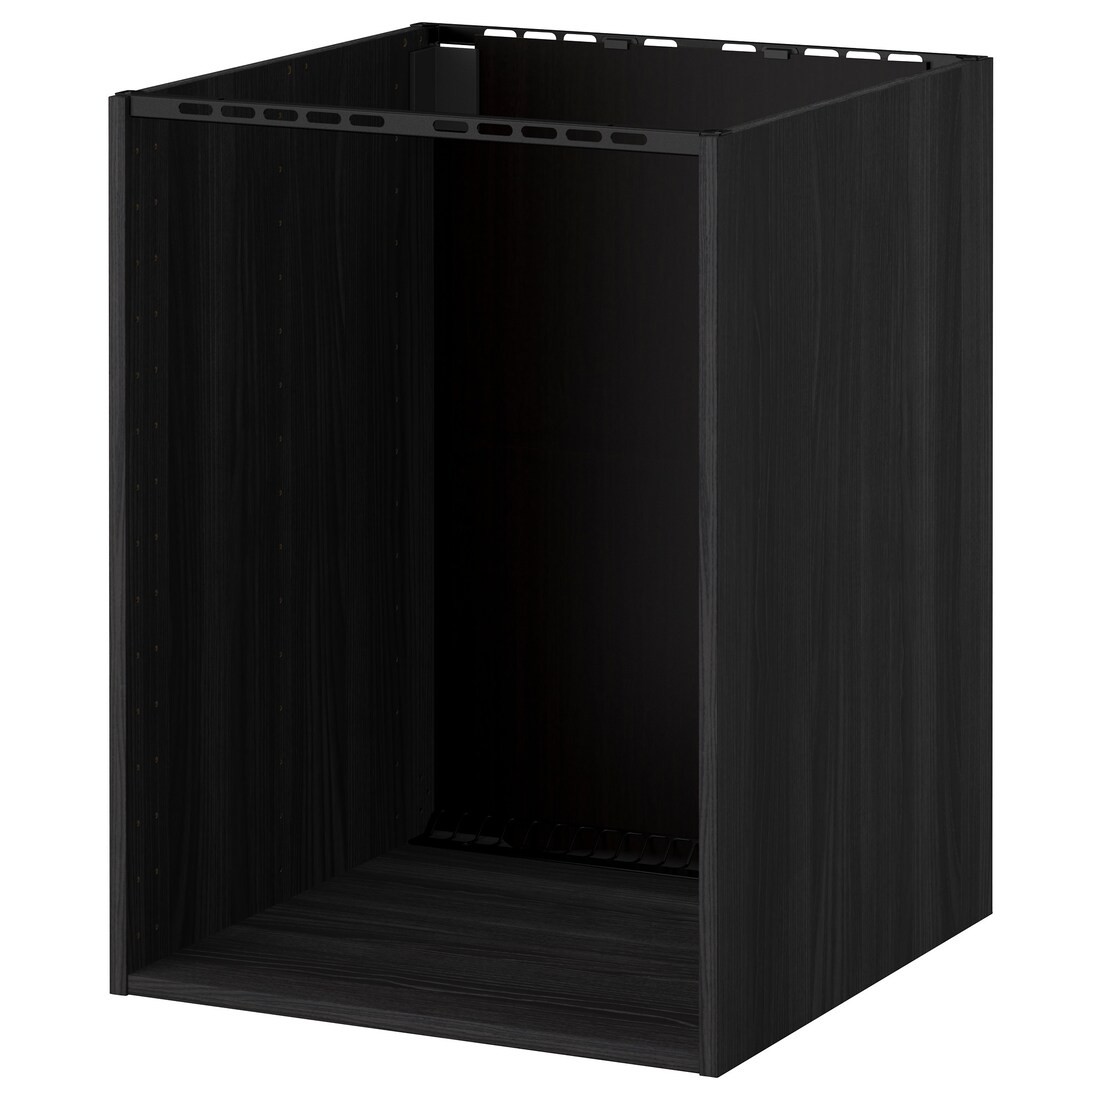 IKEA METOD МЕТОД Підлогова шафа для духовки / мийки, імітація дерева чорний, 60x60x80 см 20205543 202.055.43